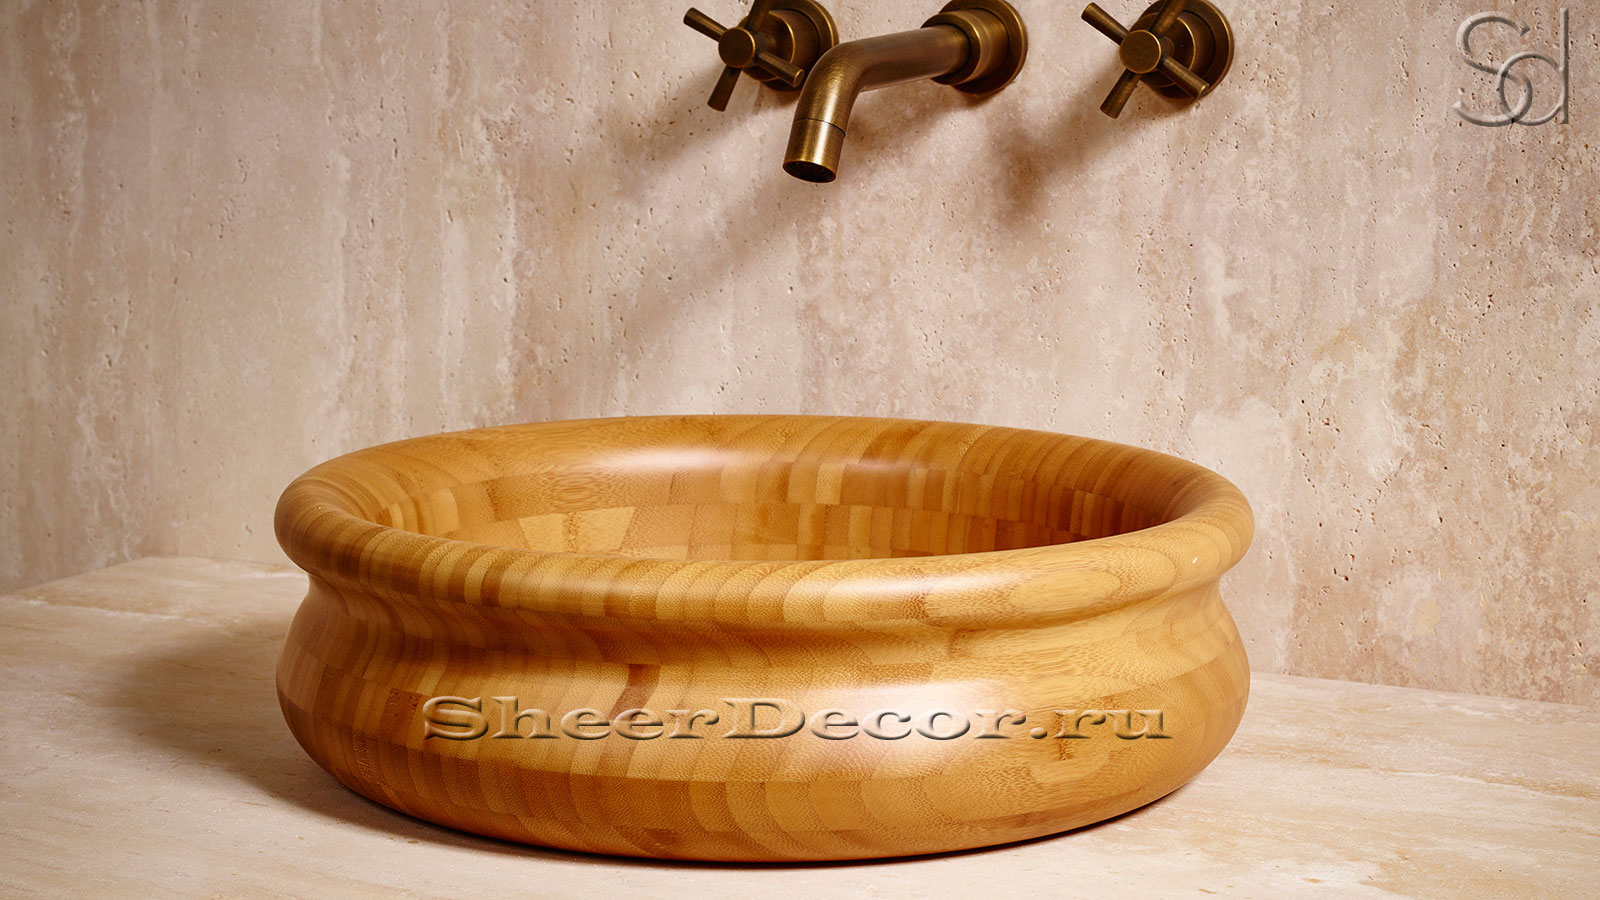 Деревянная раковина Berta M2 из натурального бамбука Golden Bamboo ИНДОНЕЗИЯ 037600012 для ванной комнаты_2